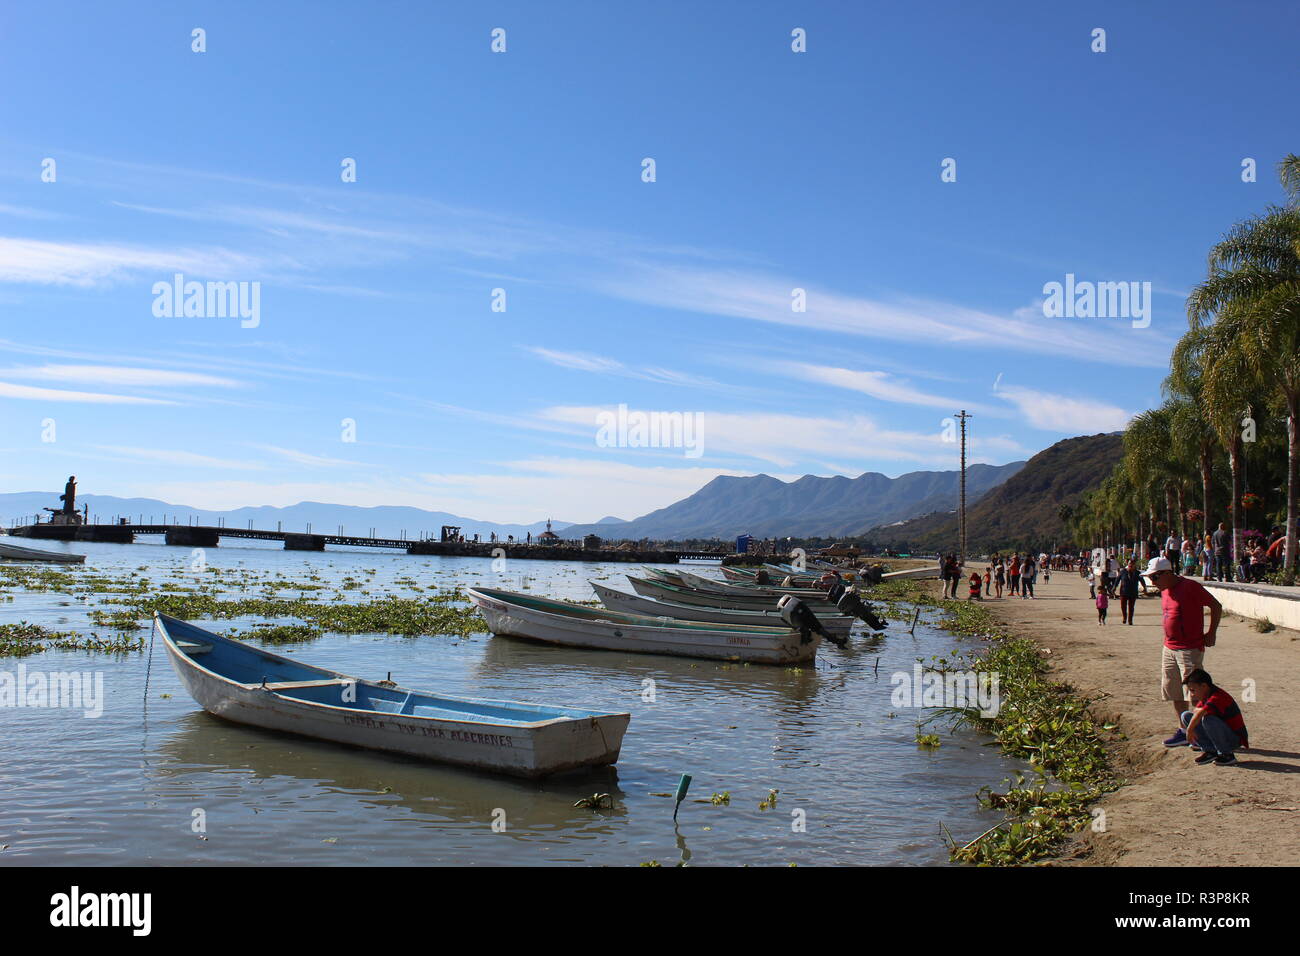 foto tomada a la orilla del lago de Chapala-Jalisco-Mexico en donde se aprecian a un padre y su hijo observando el lago desde la playa Stock Photo